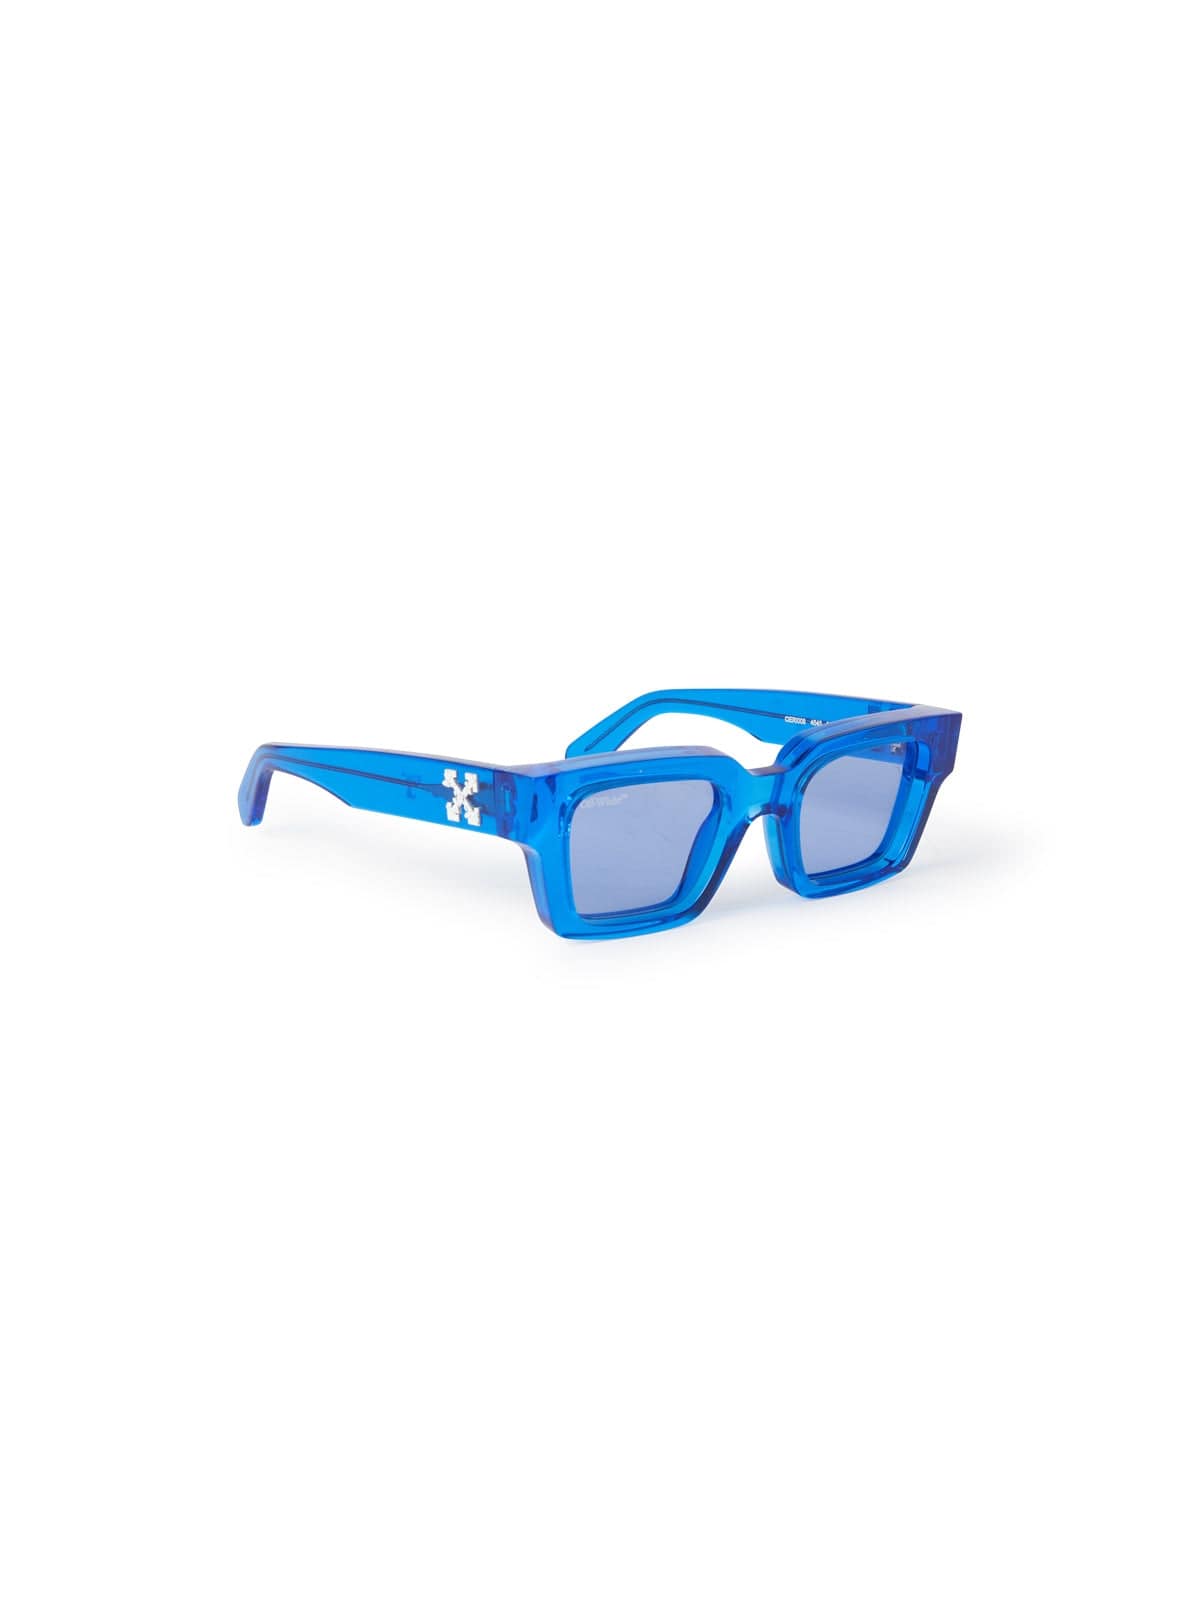 Off-White™ Occhiali da sole 50 / Azzurro trasparente / Rettangolare Off-White Virgil: occhiale rettangolare blu trasparente da sole con lenti azzurre